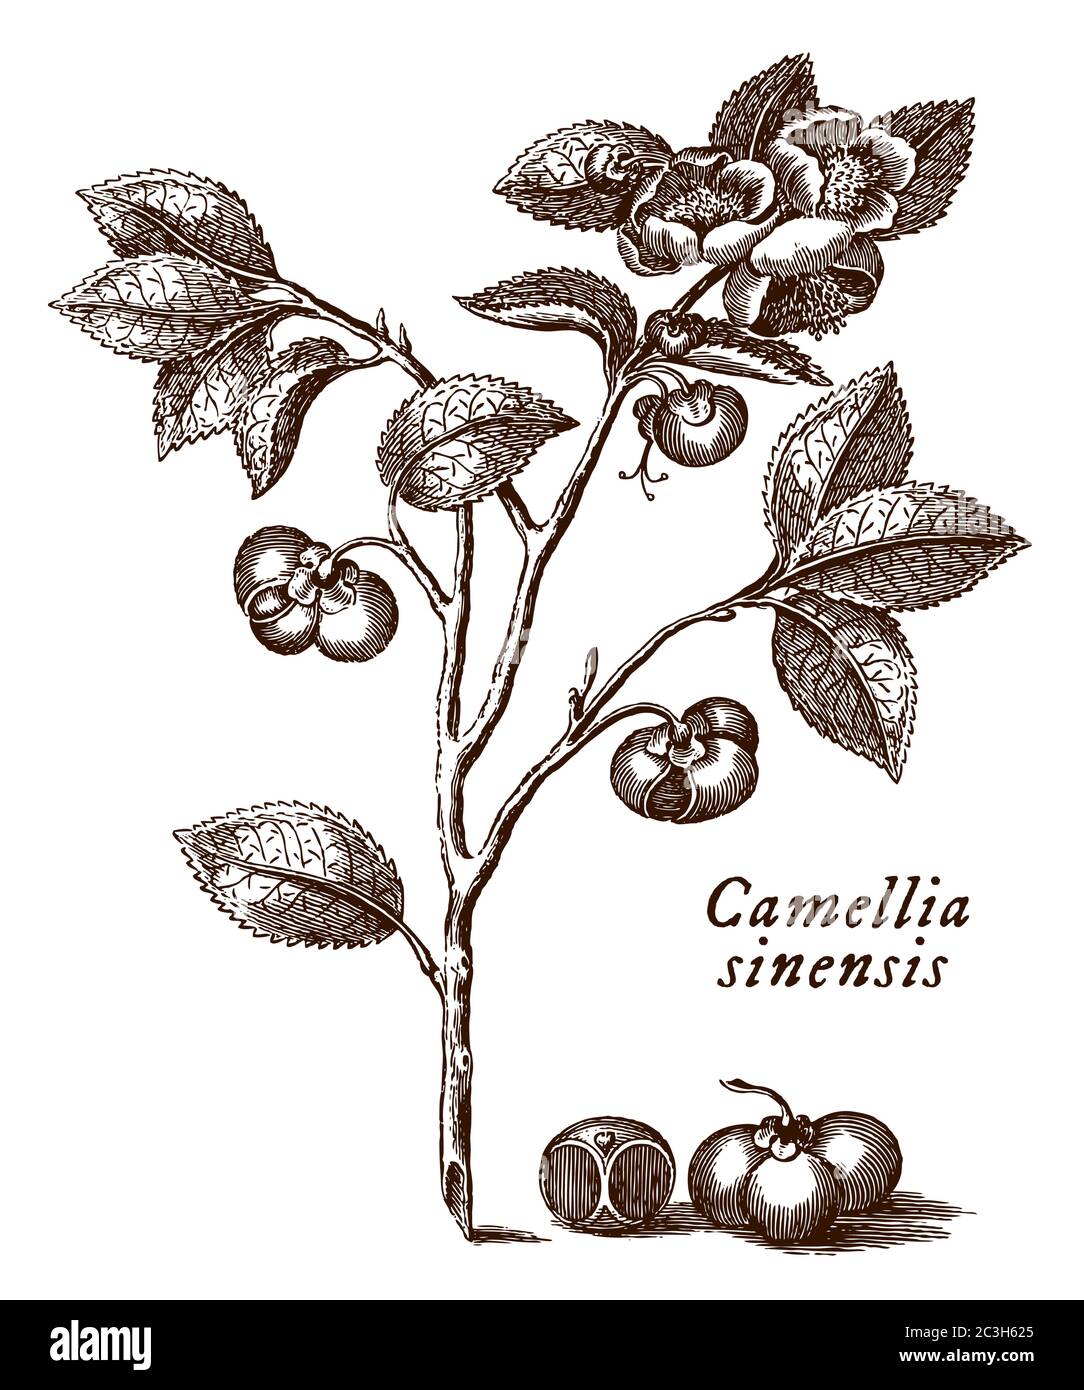 Branche avec les feuilles, les fleurs et les graines de la plante de thé avec le nom scientifique représenté camellia sinensis, après une gravure du XVIIIe siècle Illustration de Vecteur